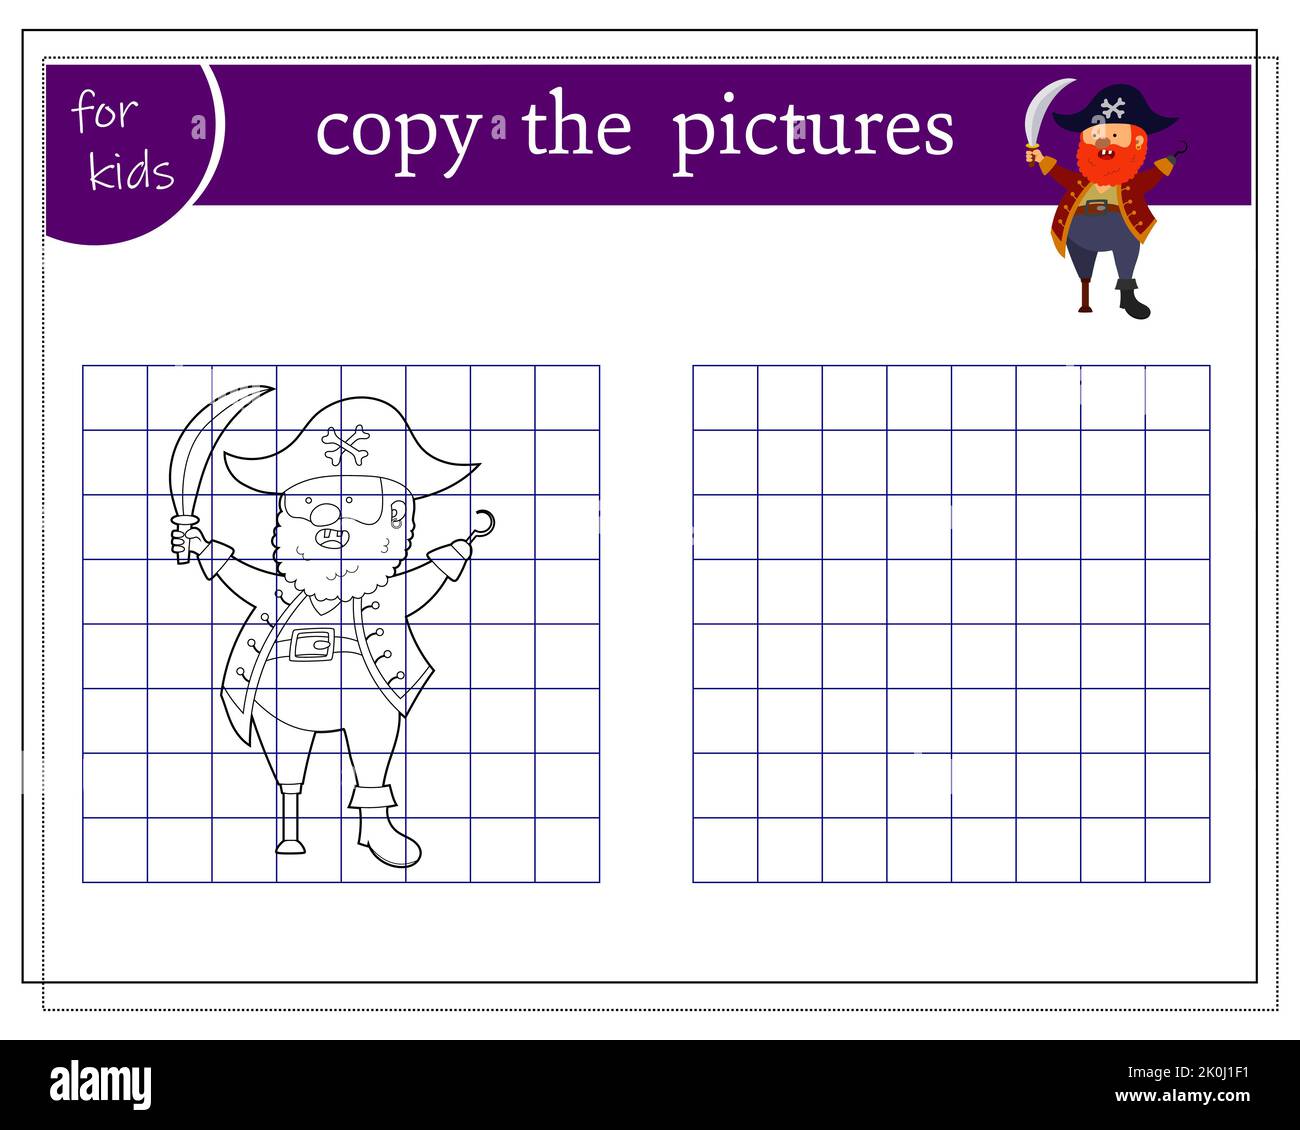 Kopieren Sie das Bild, pädagogische Spiele für Kinder, Cartoon-Piraten mit einem Holzbein. vektor Stock Vektor